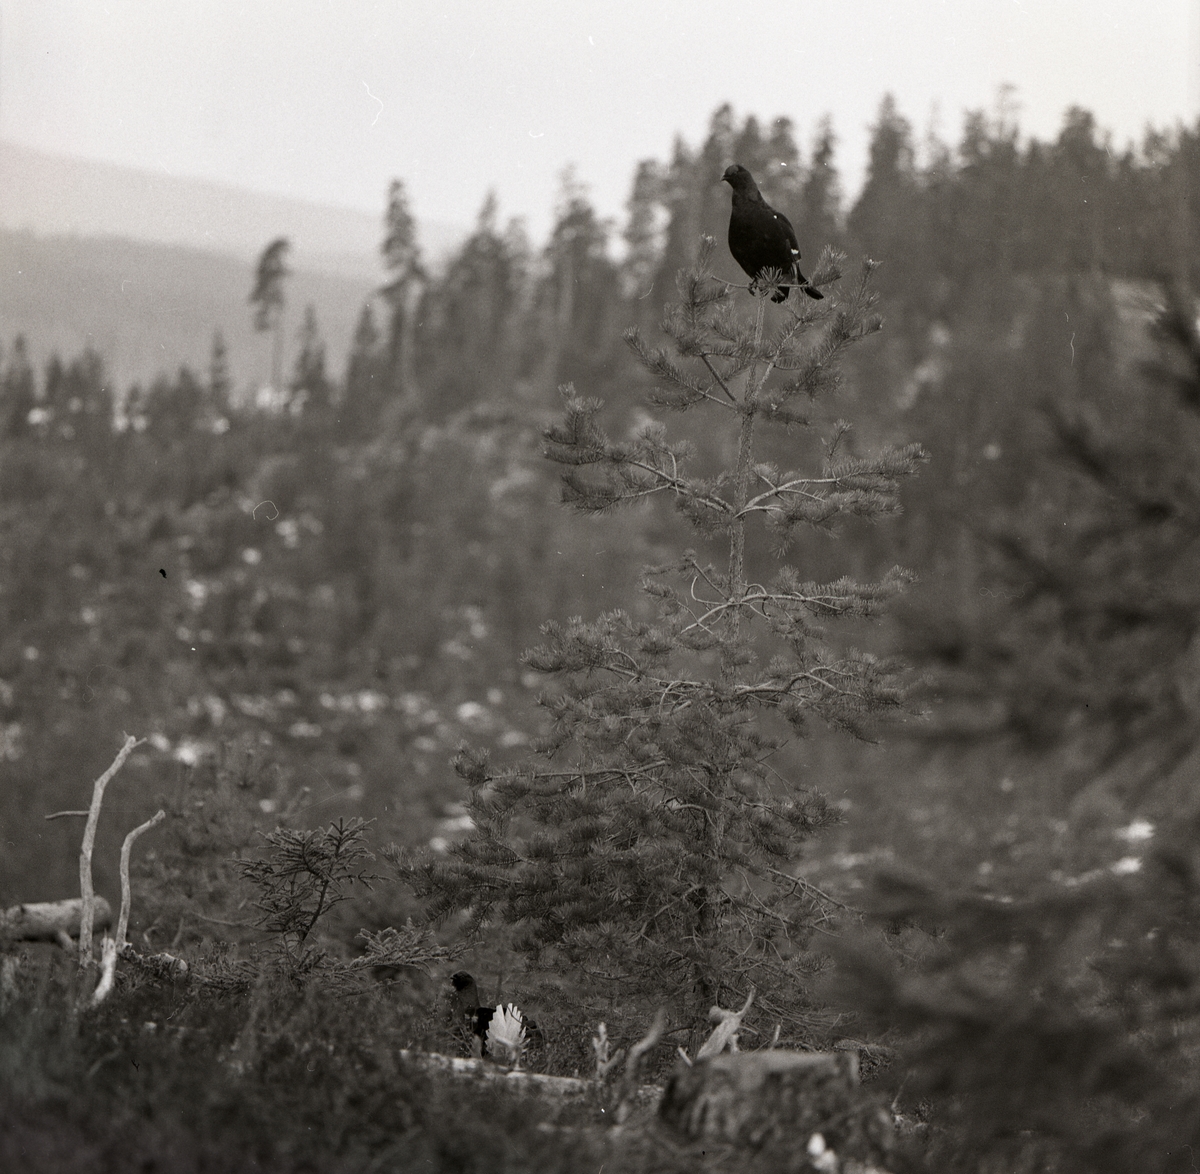 I skogen sitter en orre i toppen av en tall medan en tupp går på marken nedanför, april 1975.